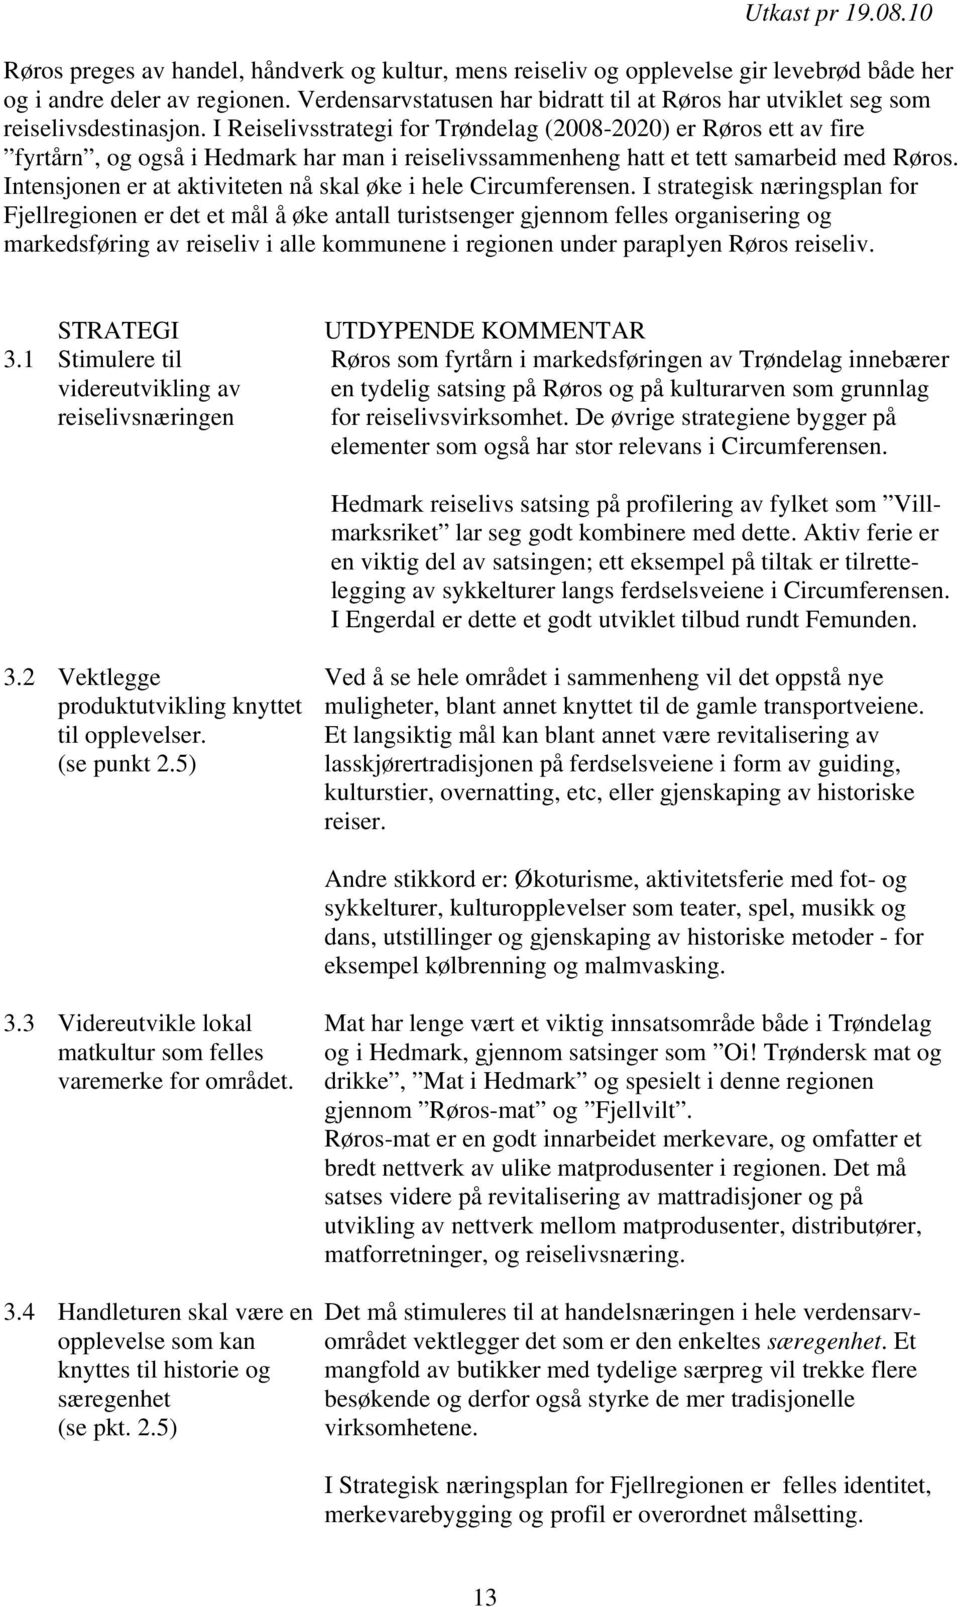 I Reiselivsstrategi for Trøndelag (2008-2020) er Røros ett av fire fyrtårn, og også i Hedmark har man i reiselivssammenheng hatt et tett samarbeid med Røros.